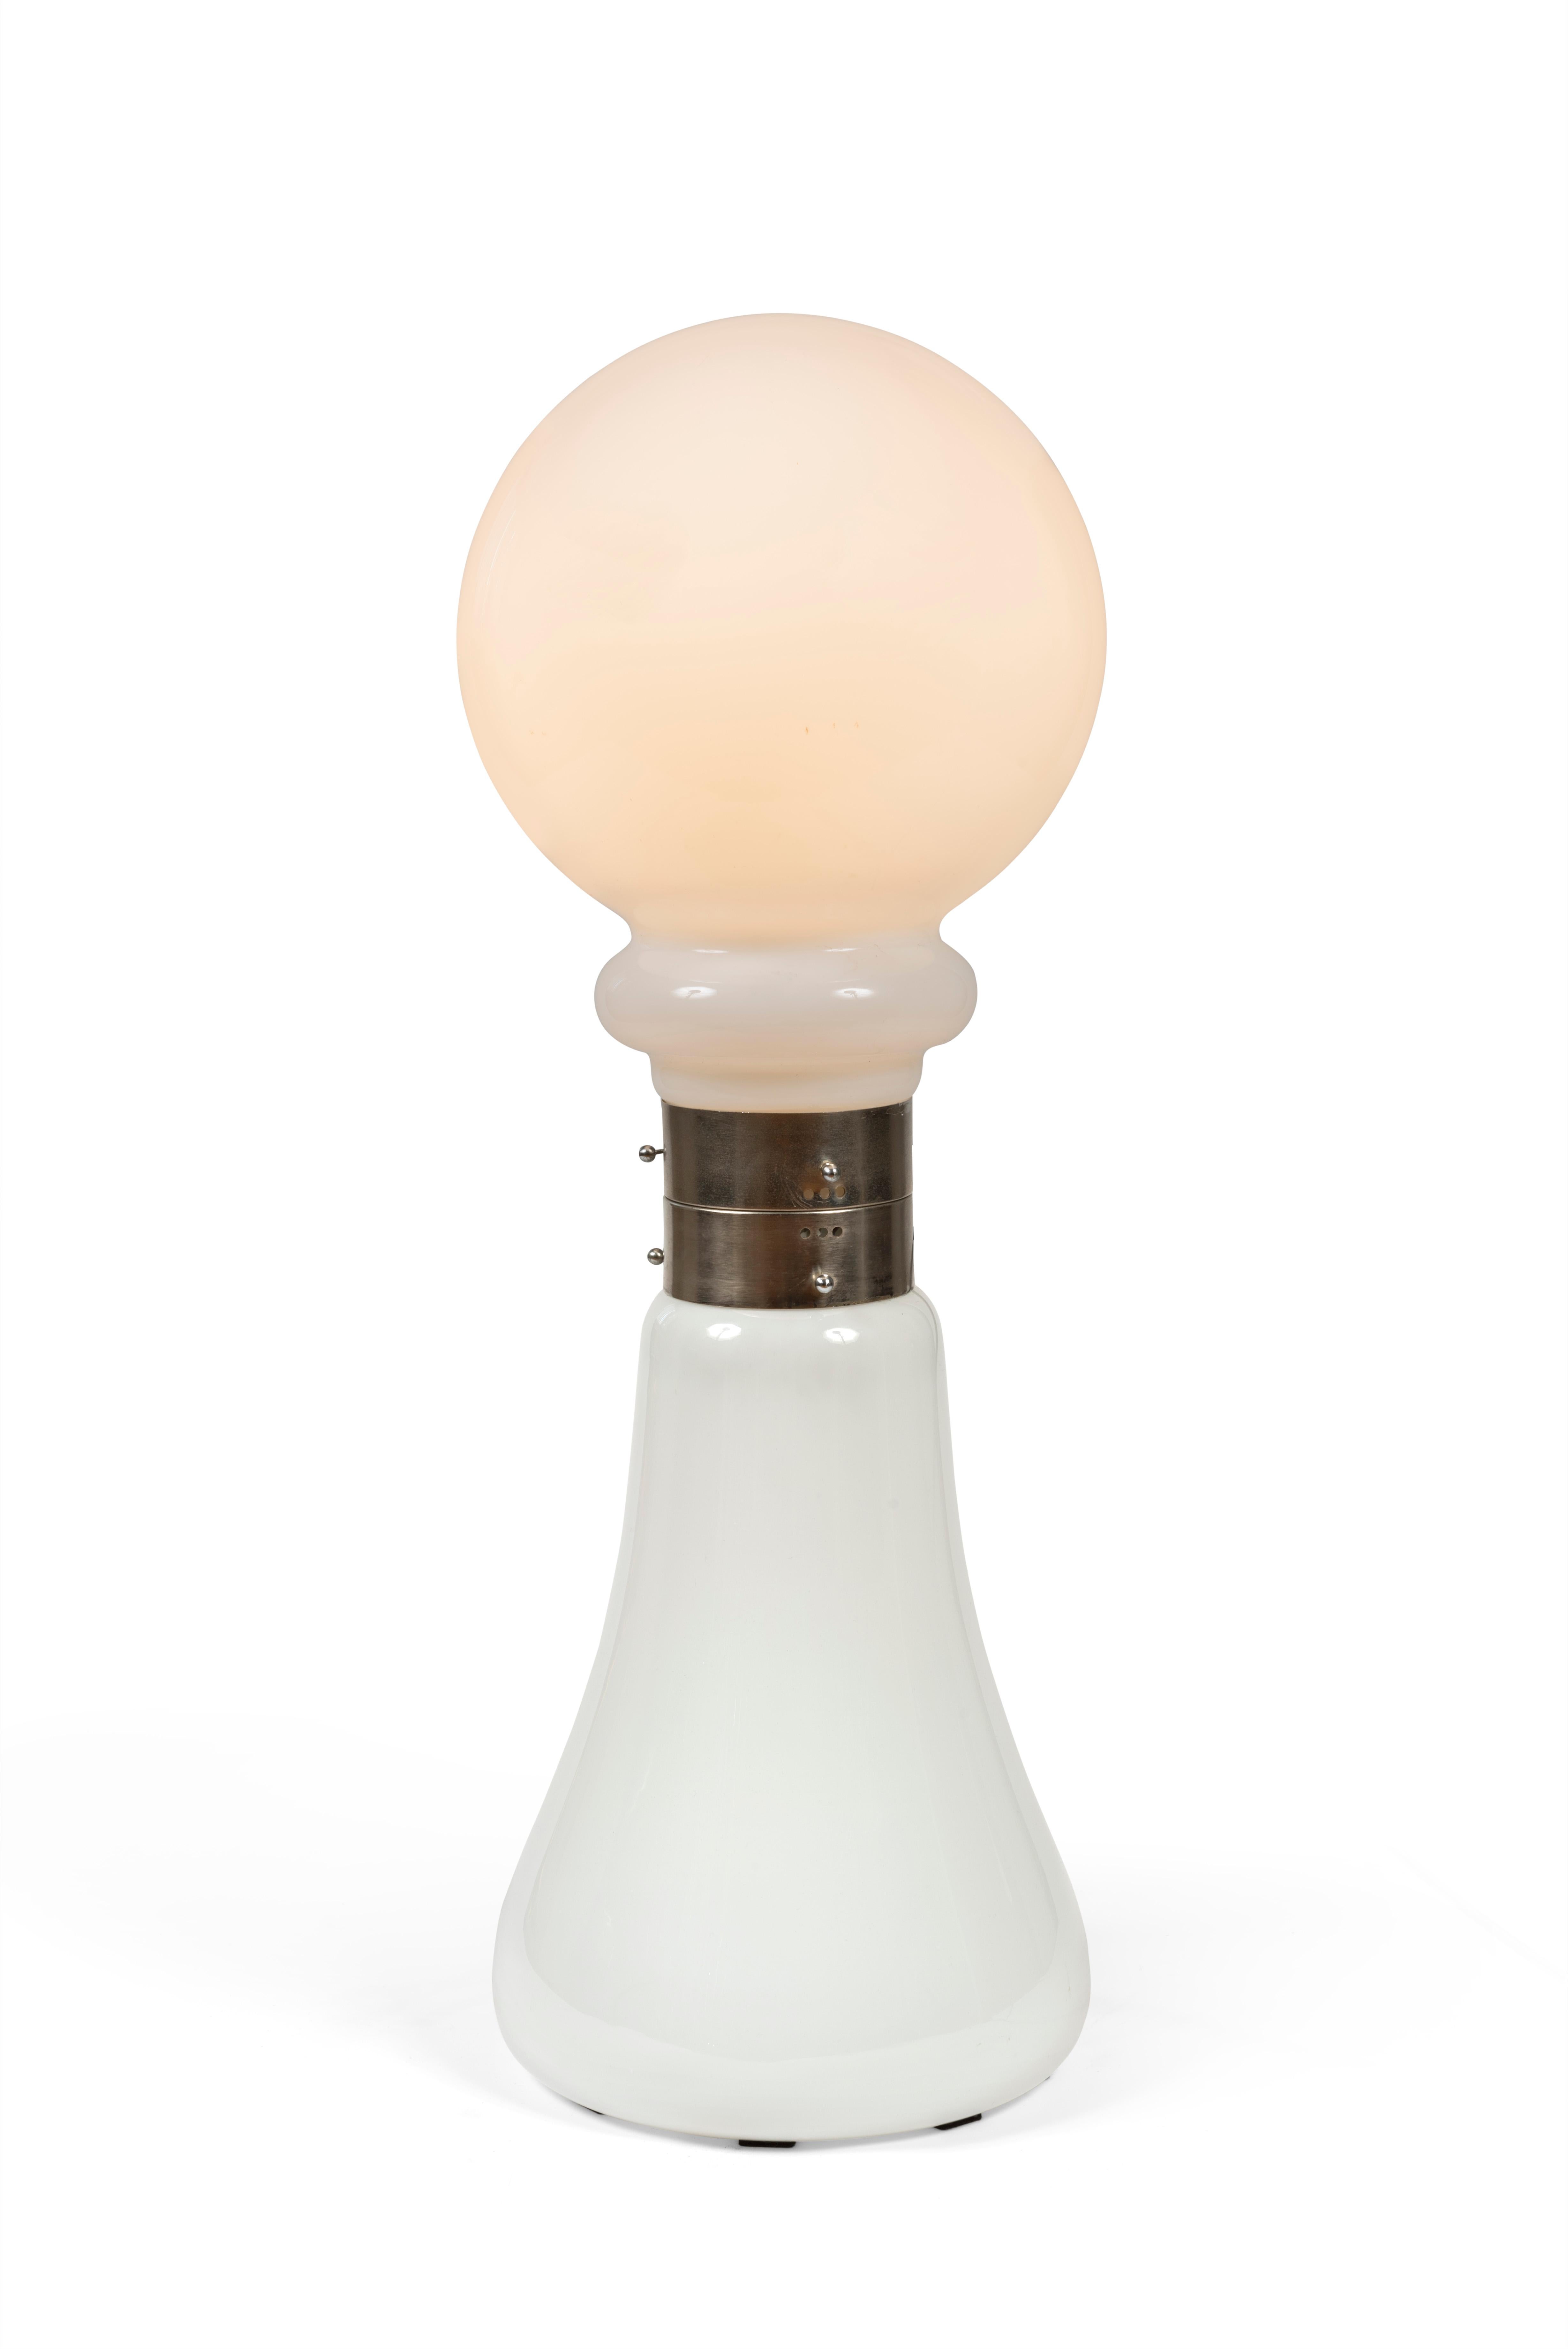 Ce lampadaire a été conçu par Carlo Nason et produit par la société italienne Vetreria Mazzega Murano dans les années 1960.

Il est réalisé en Opaline de Murano, avec une structure chromée et un abat-jour en forme d’ampoule.

Interrupteur d’origine